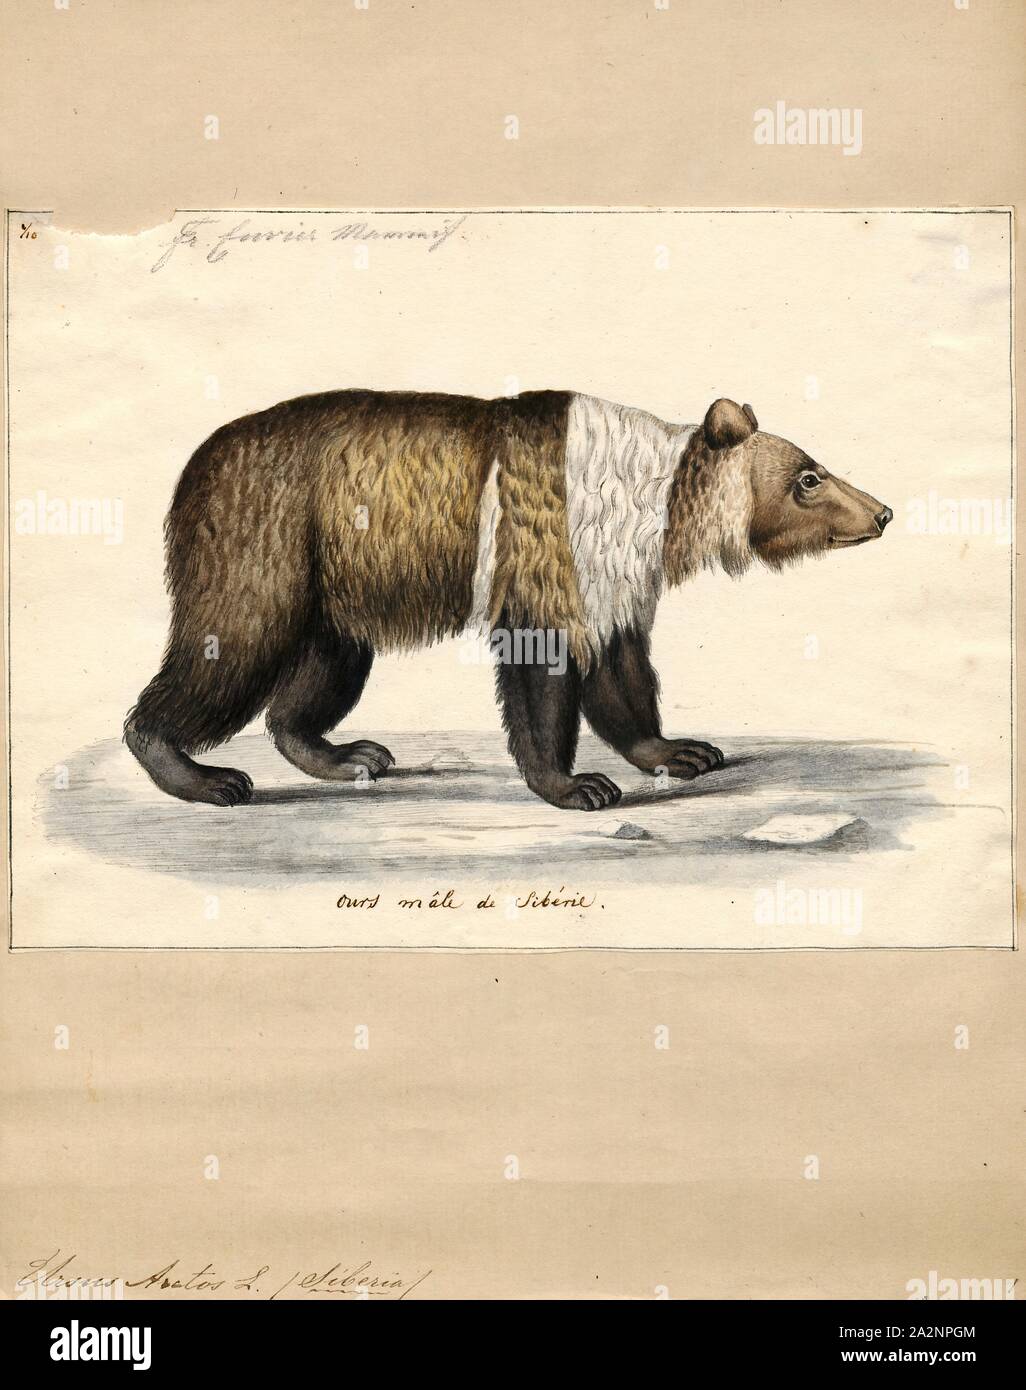 Ursus arctos, stampa l'orso bruno (Ursus arctos) è un orso che si trova in gran parte dell'Eurasia settentrionale e Nord America. In Nord America, le popolazioni di orso bruno sono spesso chiamati orsi grizzly. Si tratta di uno dei più grandi terrestre vivente membri dell Ordine Carnivora, rivaleggiava con dimensioni solo dal suo parente più vicino, l'orso polare (Ursus maritimus), che è molto meno di dimensione variabile e di dimensioni leggermente più grandi rispetto alla media., 1700-1880 Foto Stock